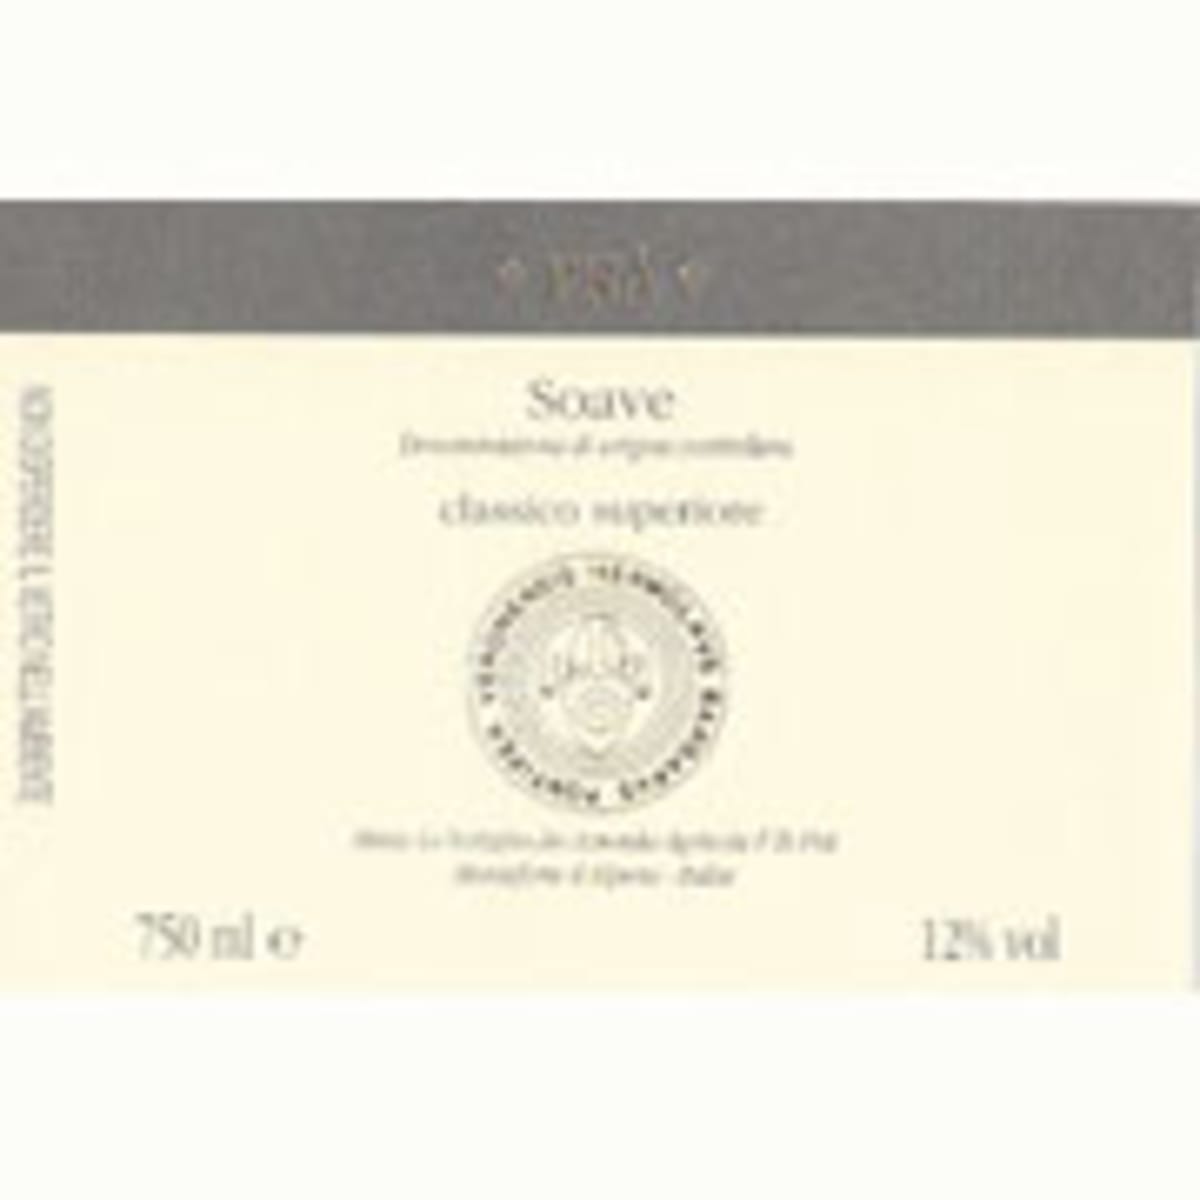 Pra Soave Classico 2009 Front Label